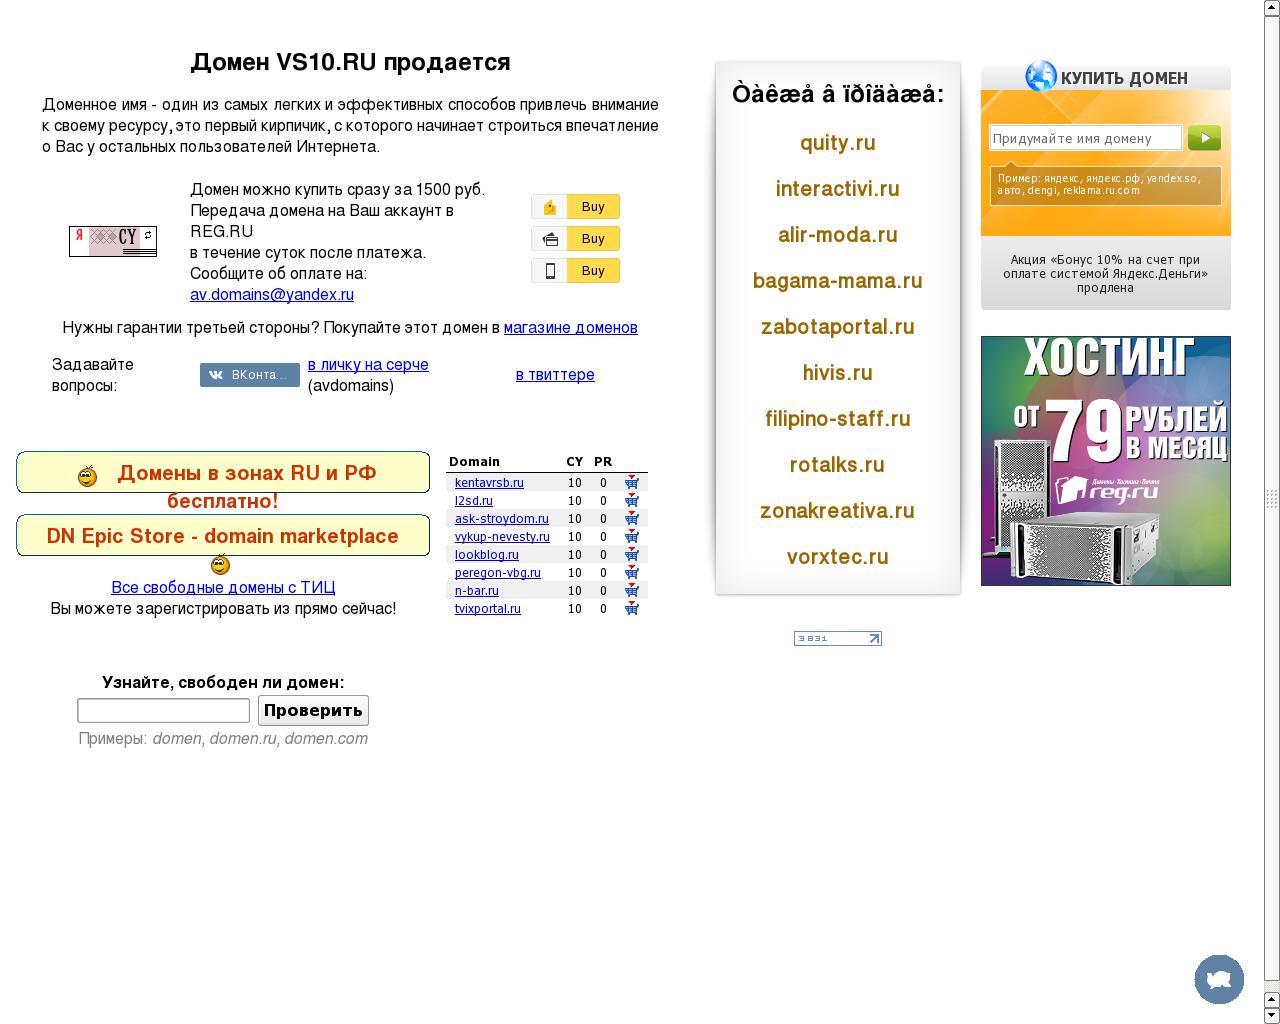 Изображение сайта vs10.ru в разрешении 1280x1024